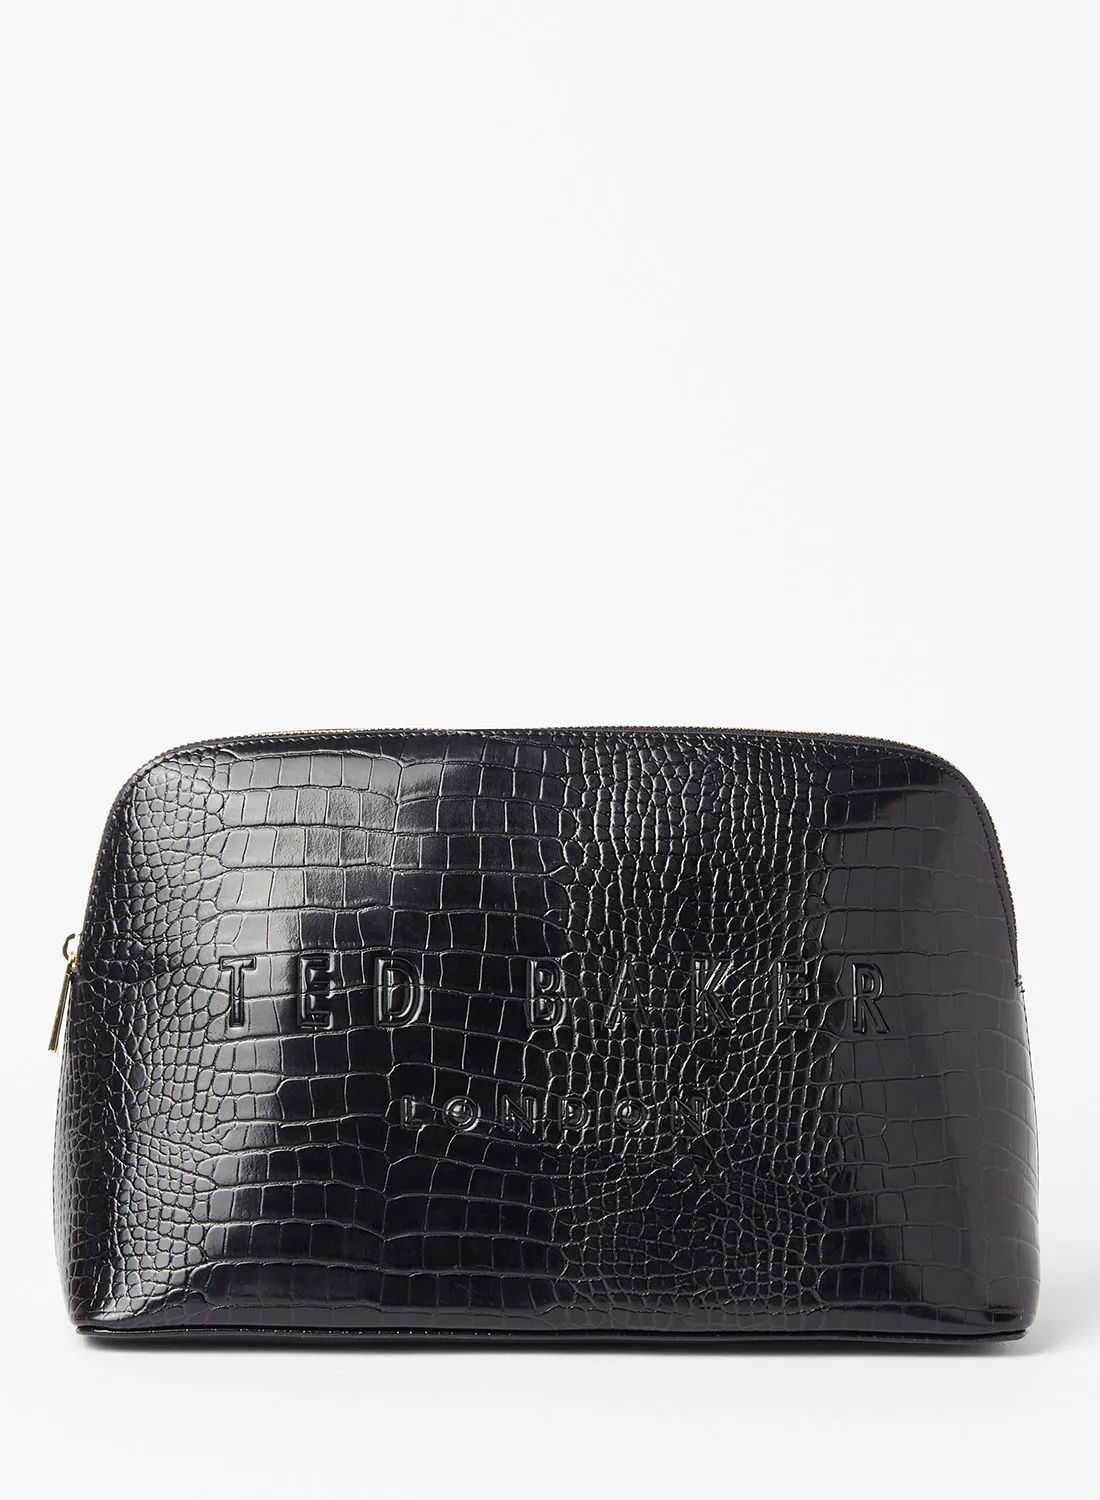 حقيبة غسيل من Ted Baker Croc Effect باللون الأسود